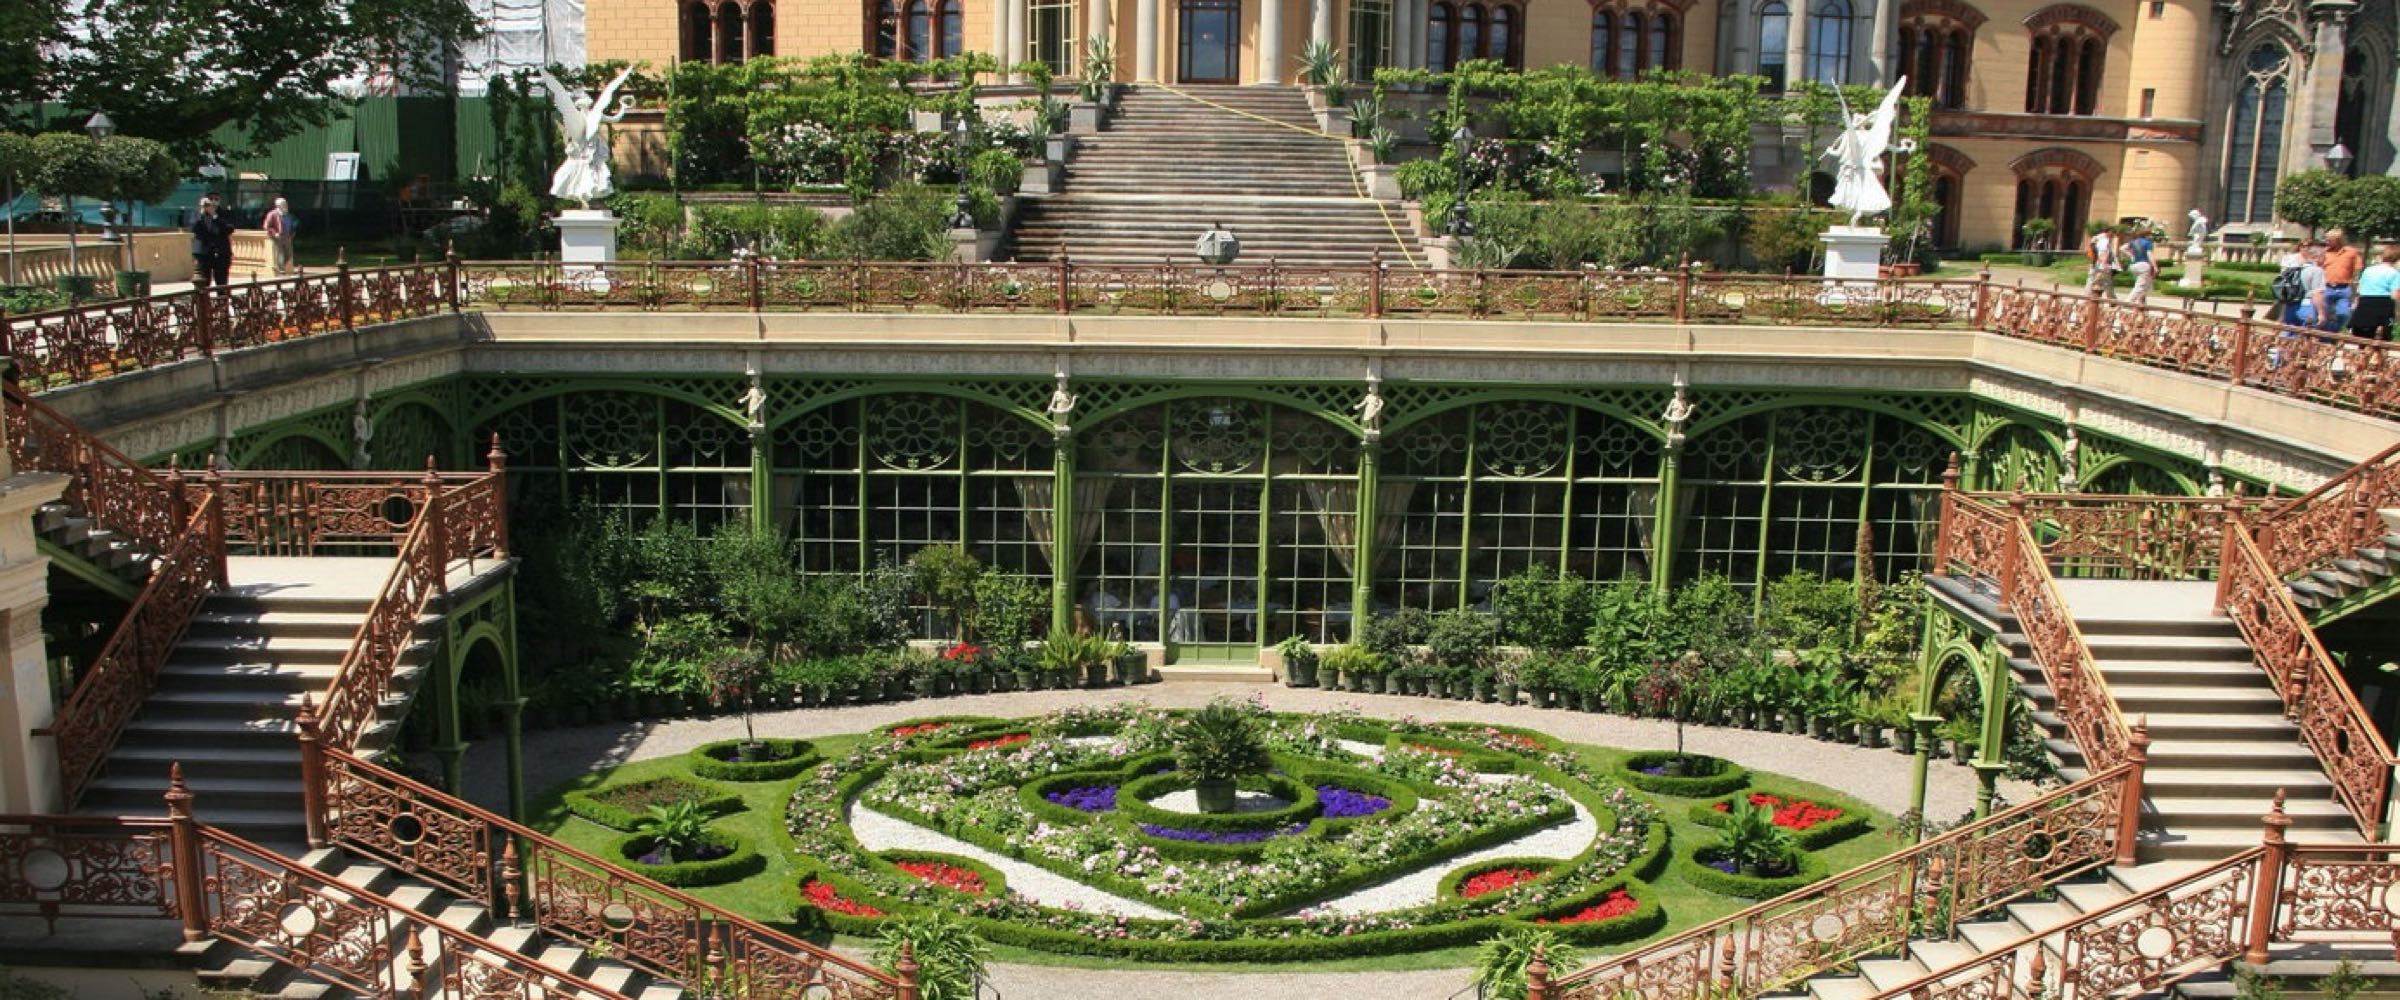 Schlossgarten und Orangerie in Schwerin